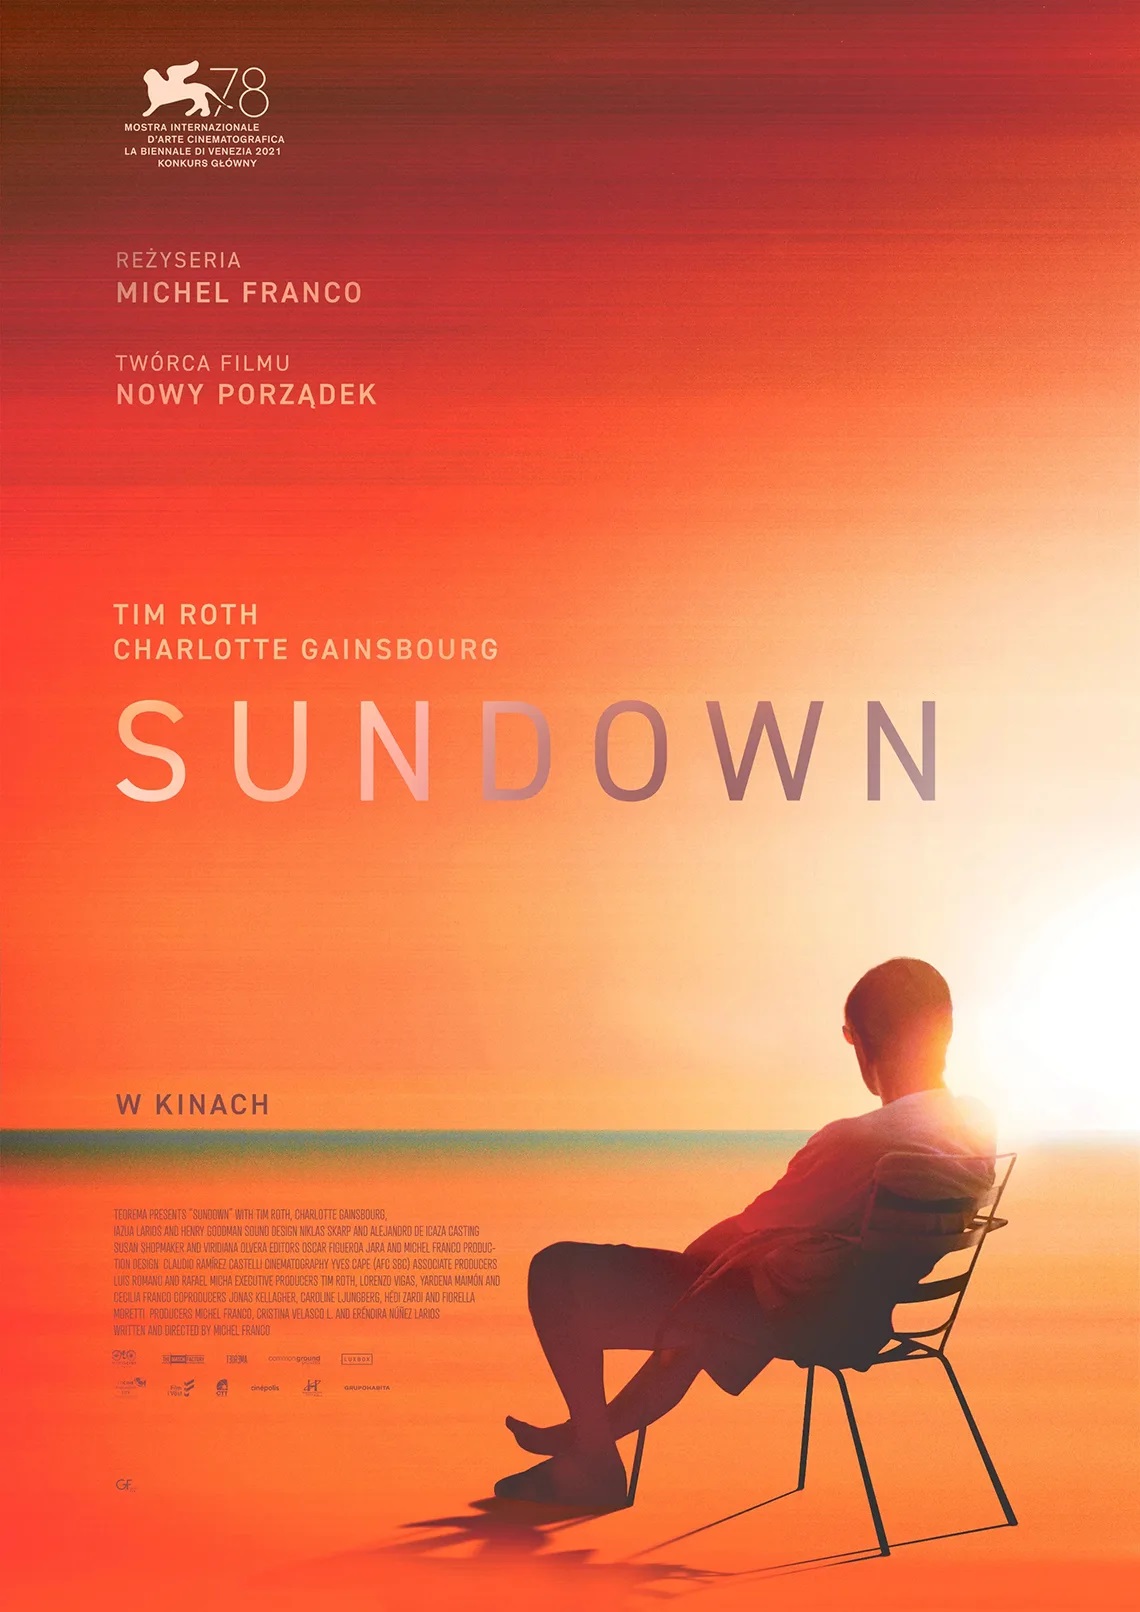 tytuł Sundown, Pomarańczowe tło, mężczyzna siedzi na leżaku. Informacje o filmie